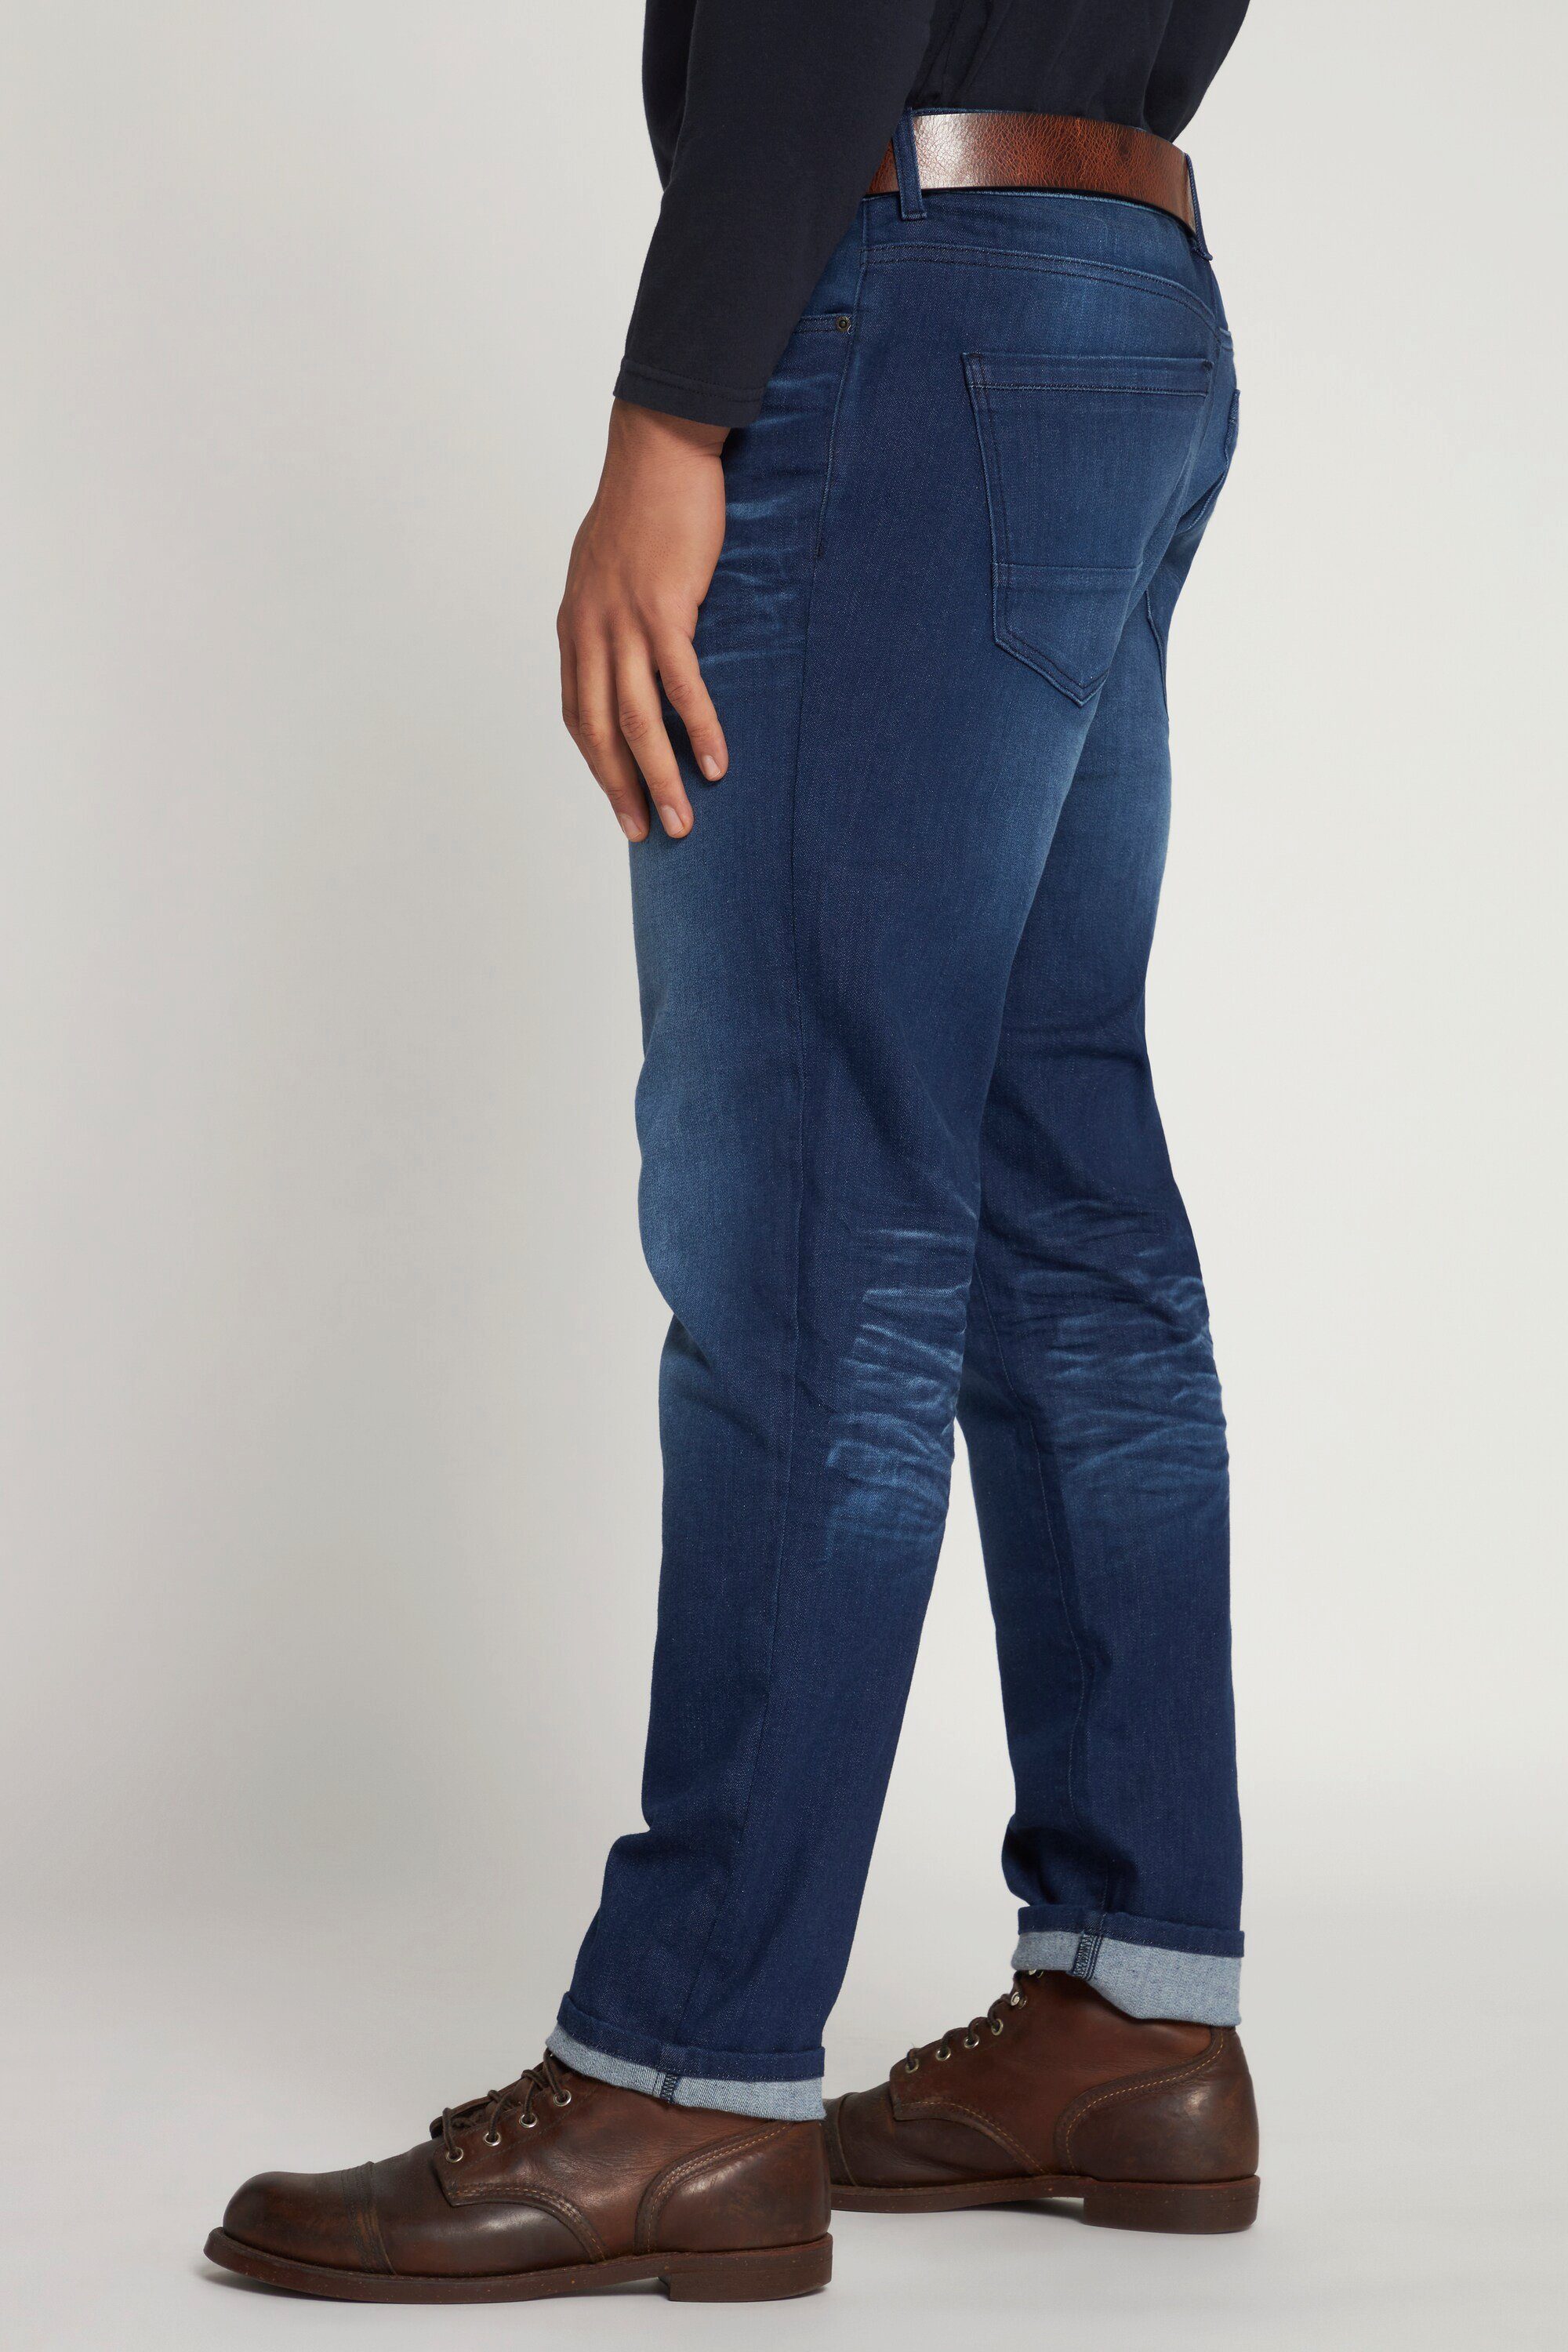 Loose 5-Pocket-Jeans Fit Look Tapered denim Vintage Denim Jeans JP1880 blue